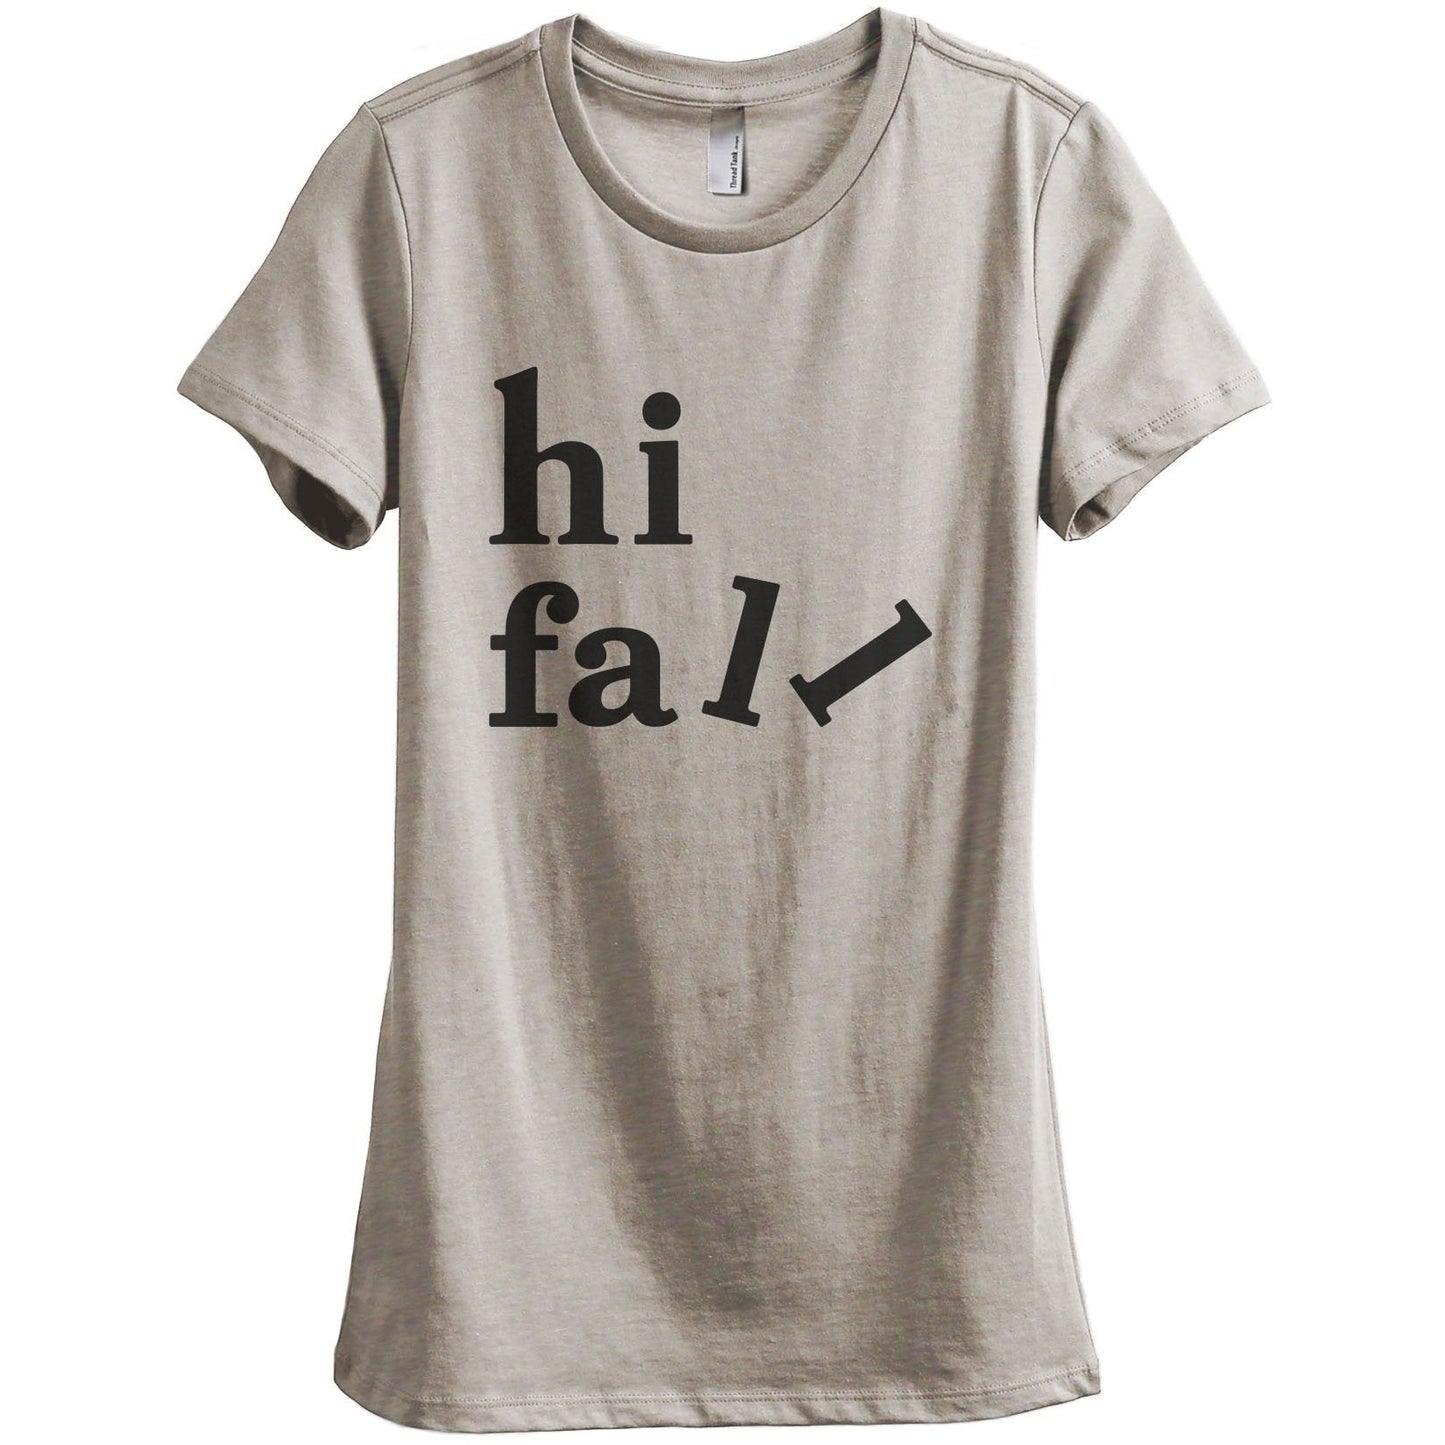 Hi Fall Women's Relaxed Crewneck T-Shirt Top Tee Heather Tan Grey
